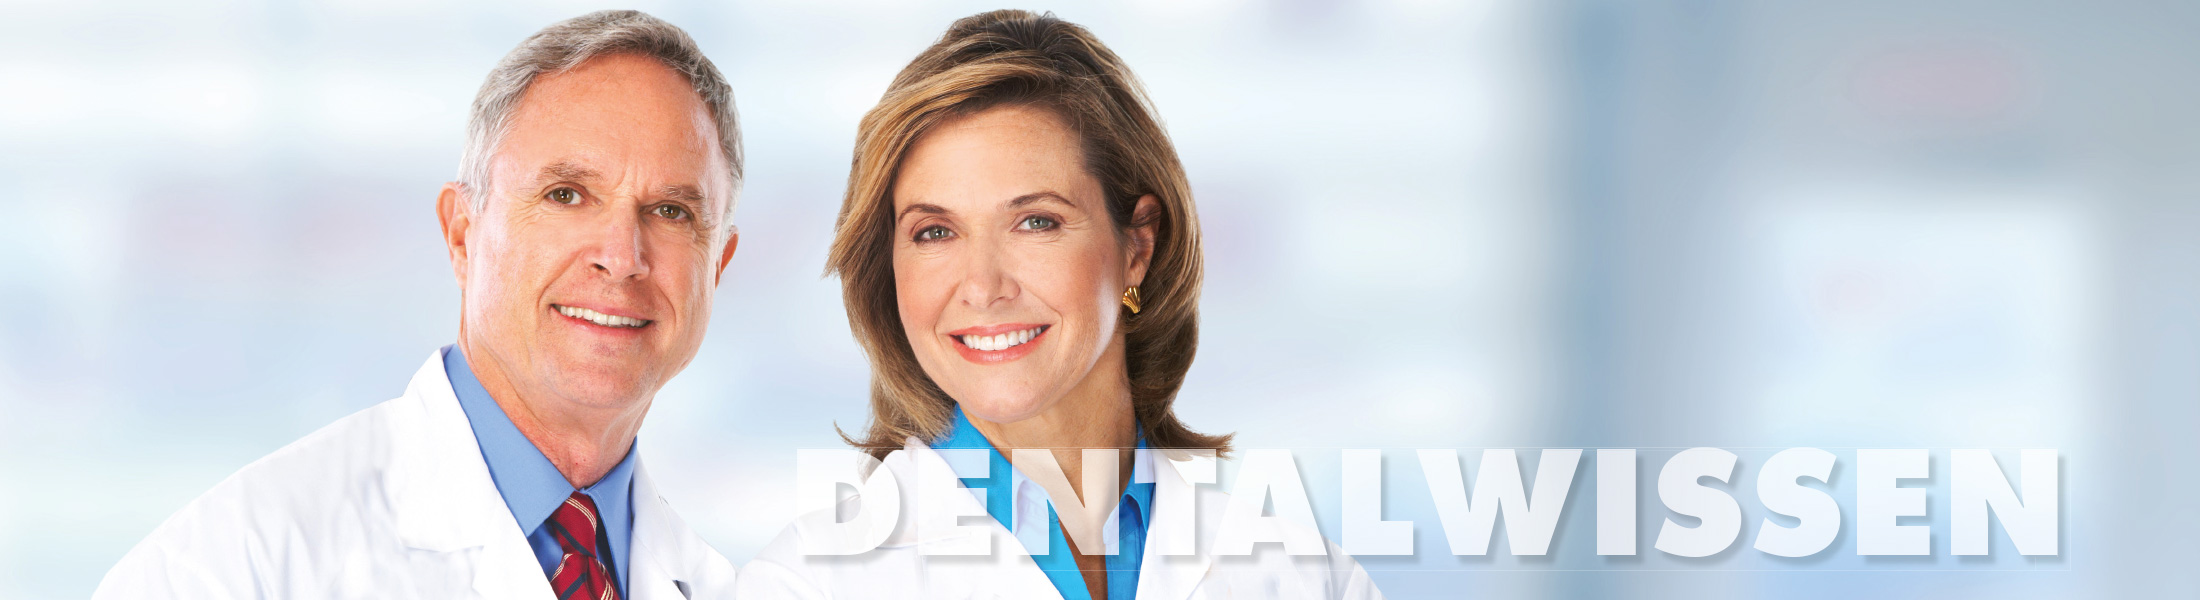 Dentalwissen-Behandlung-Dentoalveolaere-Chirurgie